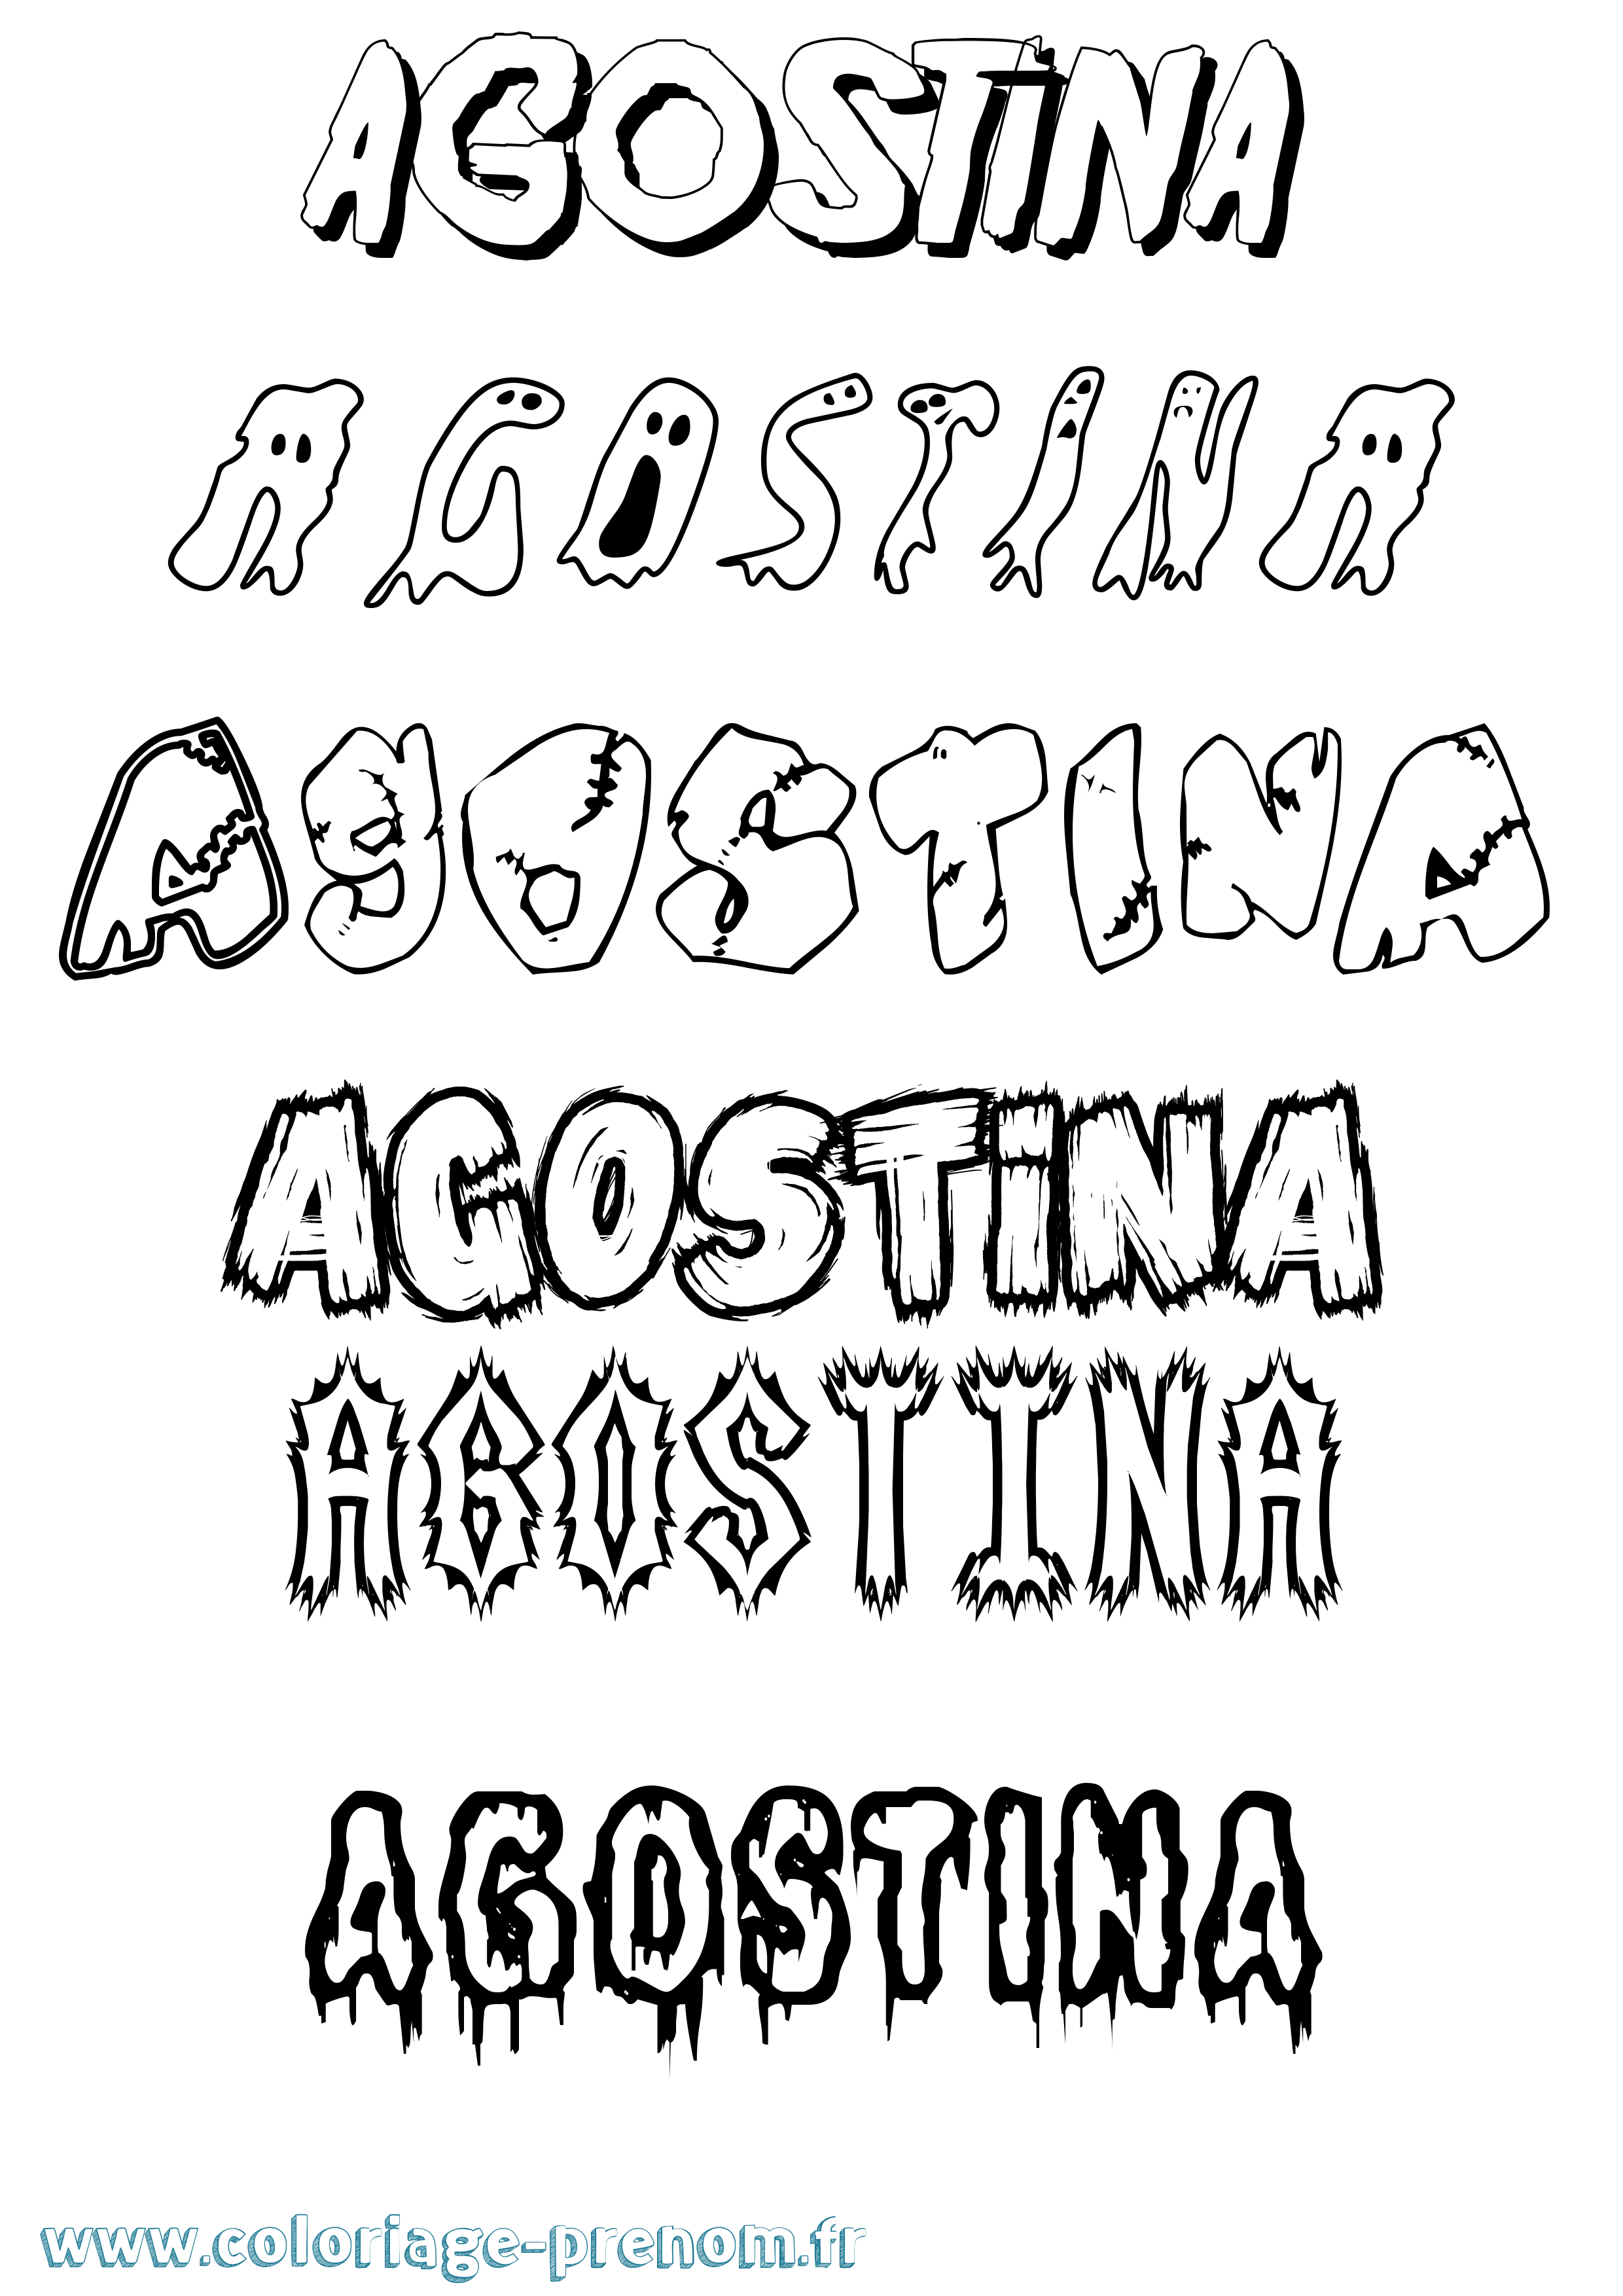 Coloriage prénom Agostina Frisson